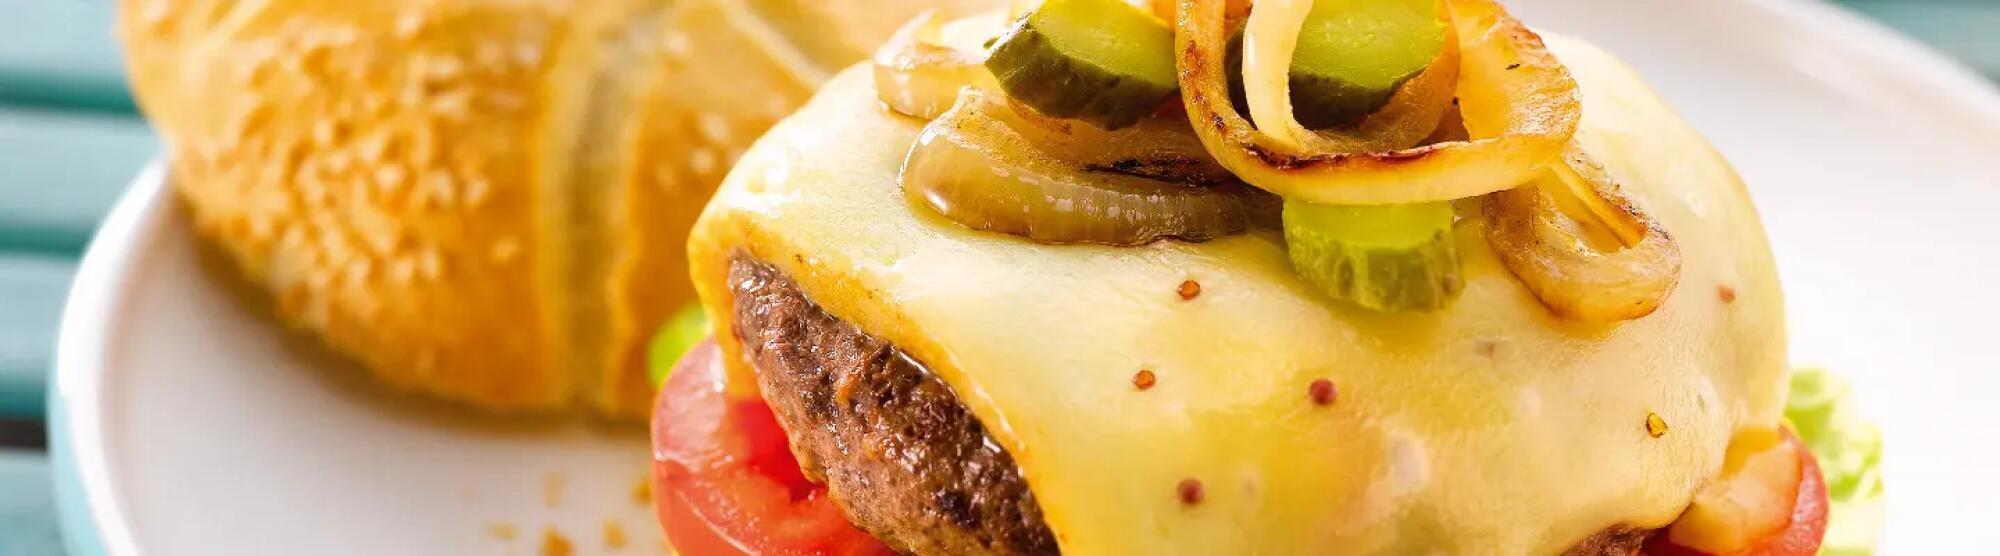 LA02_burger-des-alpages-fromage-raclette-rcihesmonts